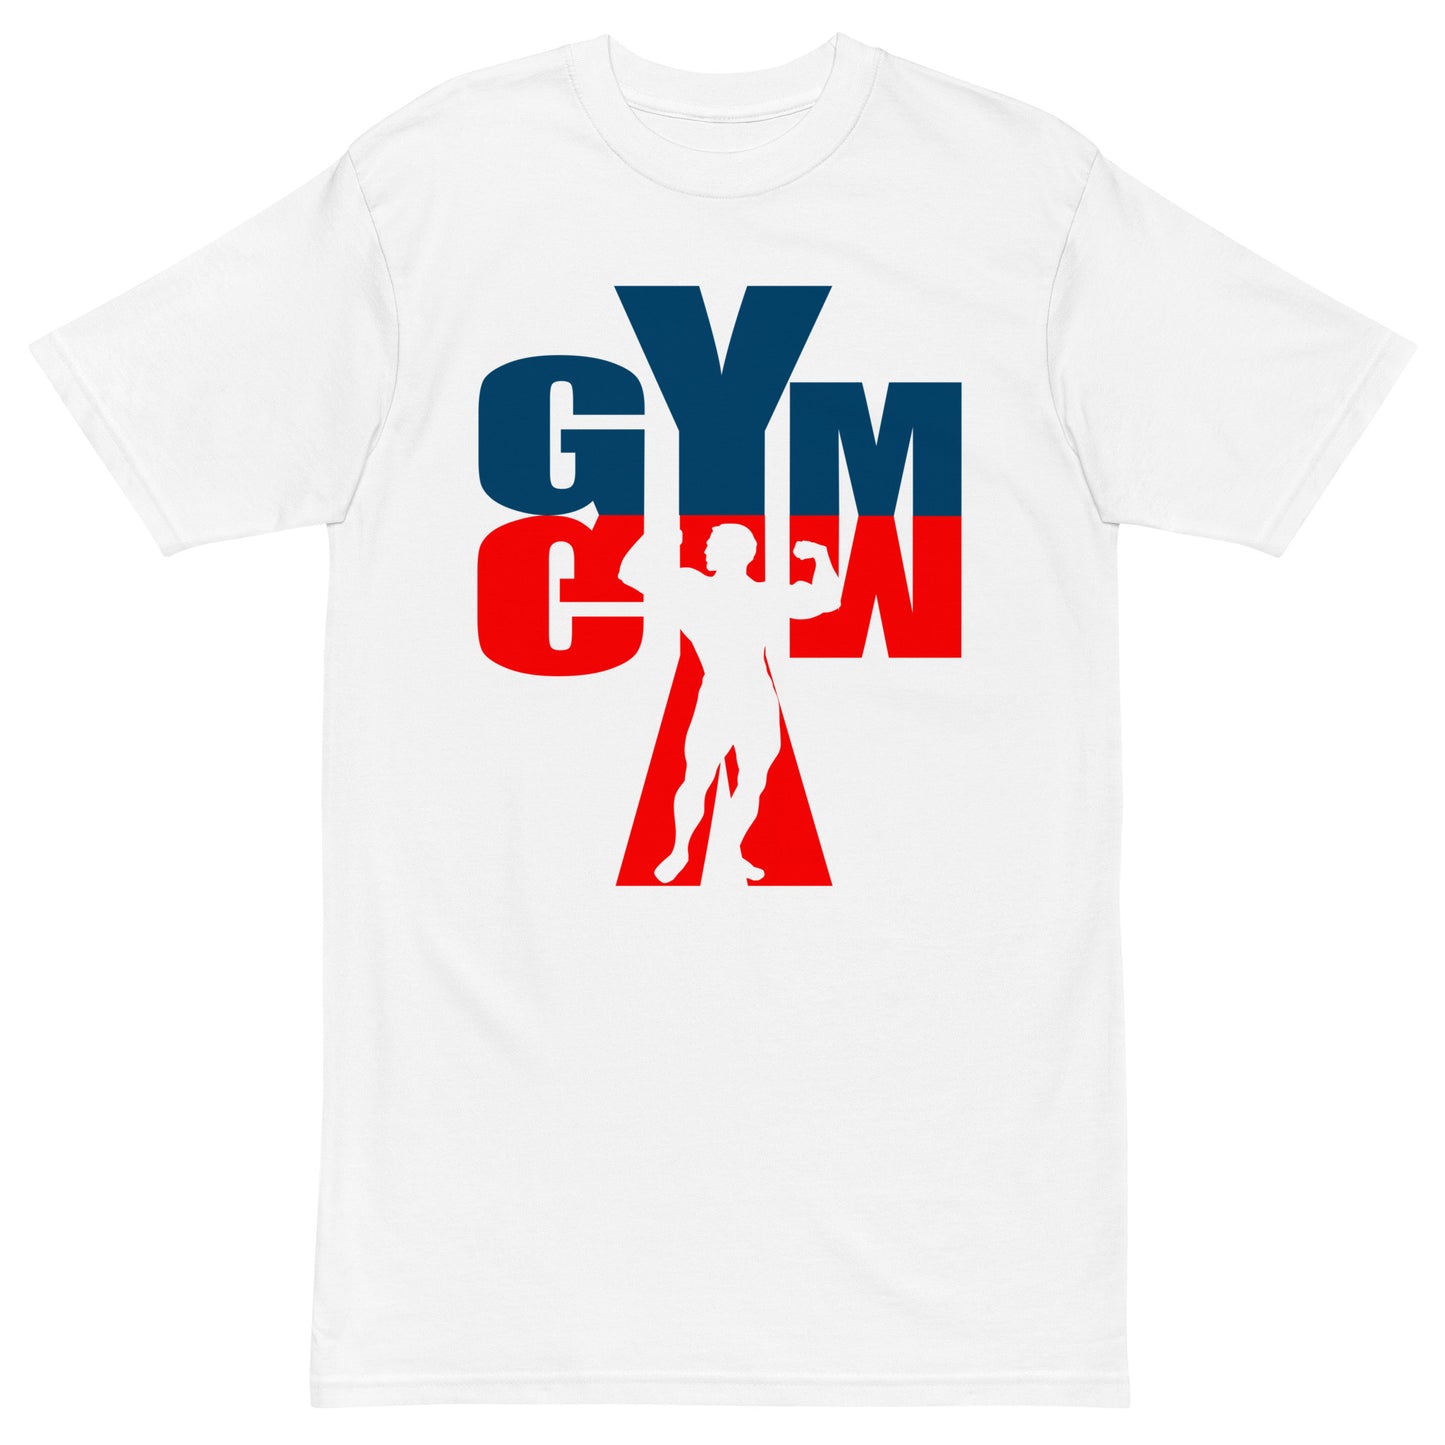 gym - tees - men tshirts - shirts - graphic tees 